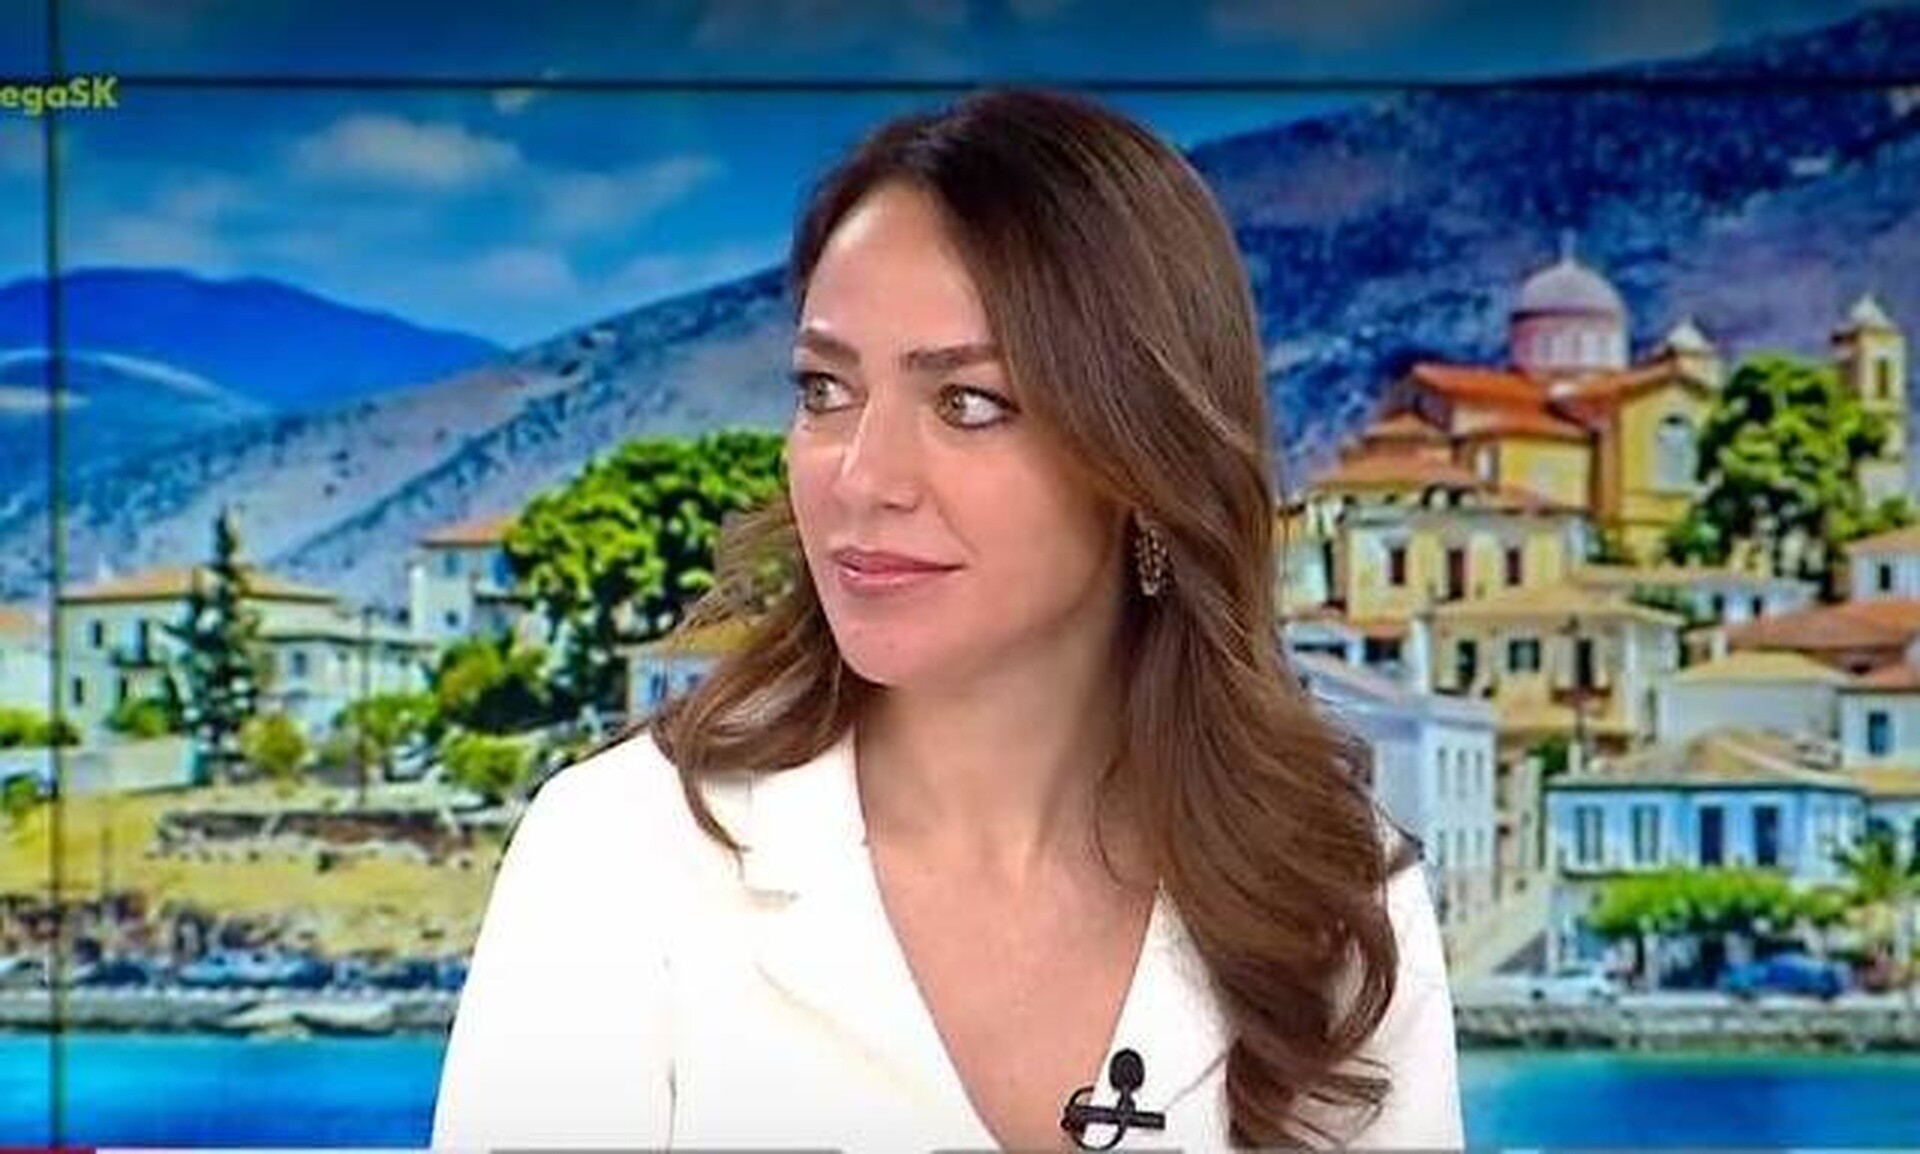 Δόμνα Μιχαηλίδου: «Σε σχέση με το 2019 ο Έλληνας έχει 3 παραπάνω κατώτατους μισθούς στην τσέπη»